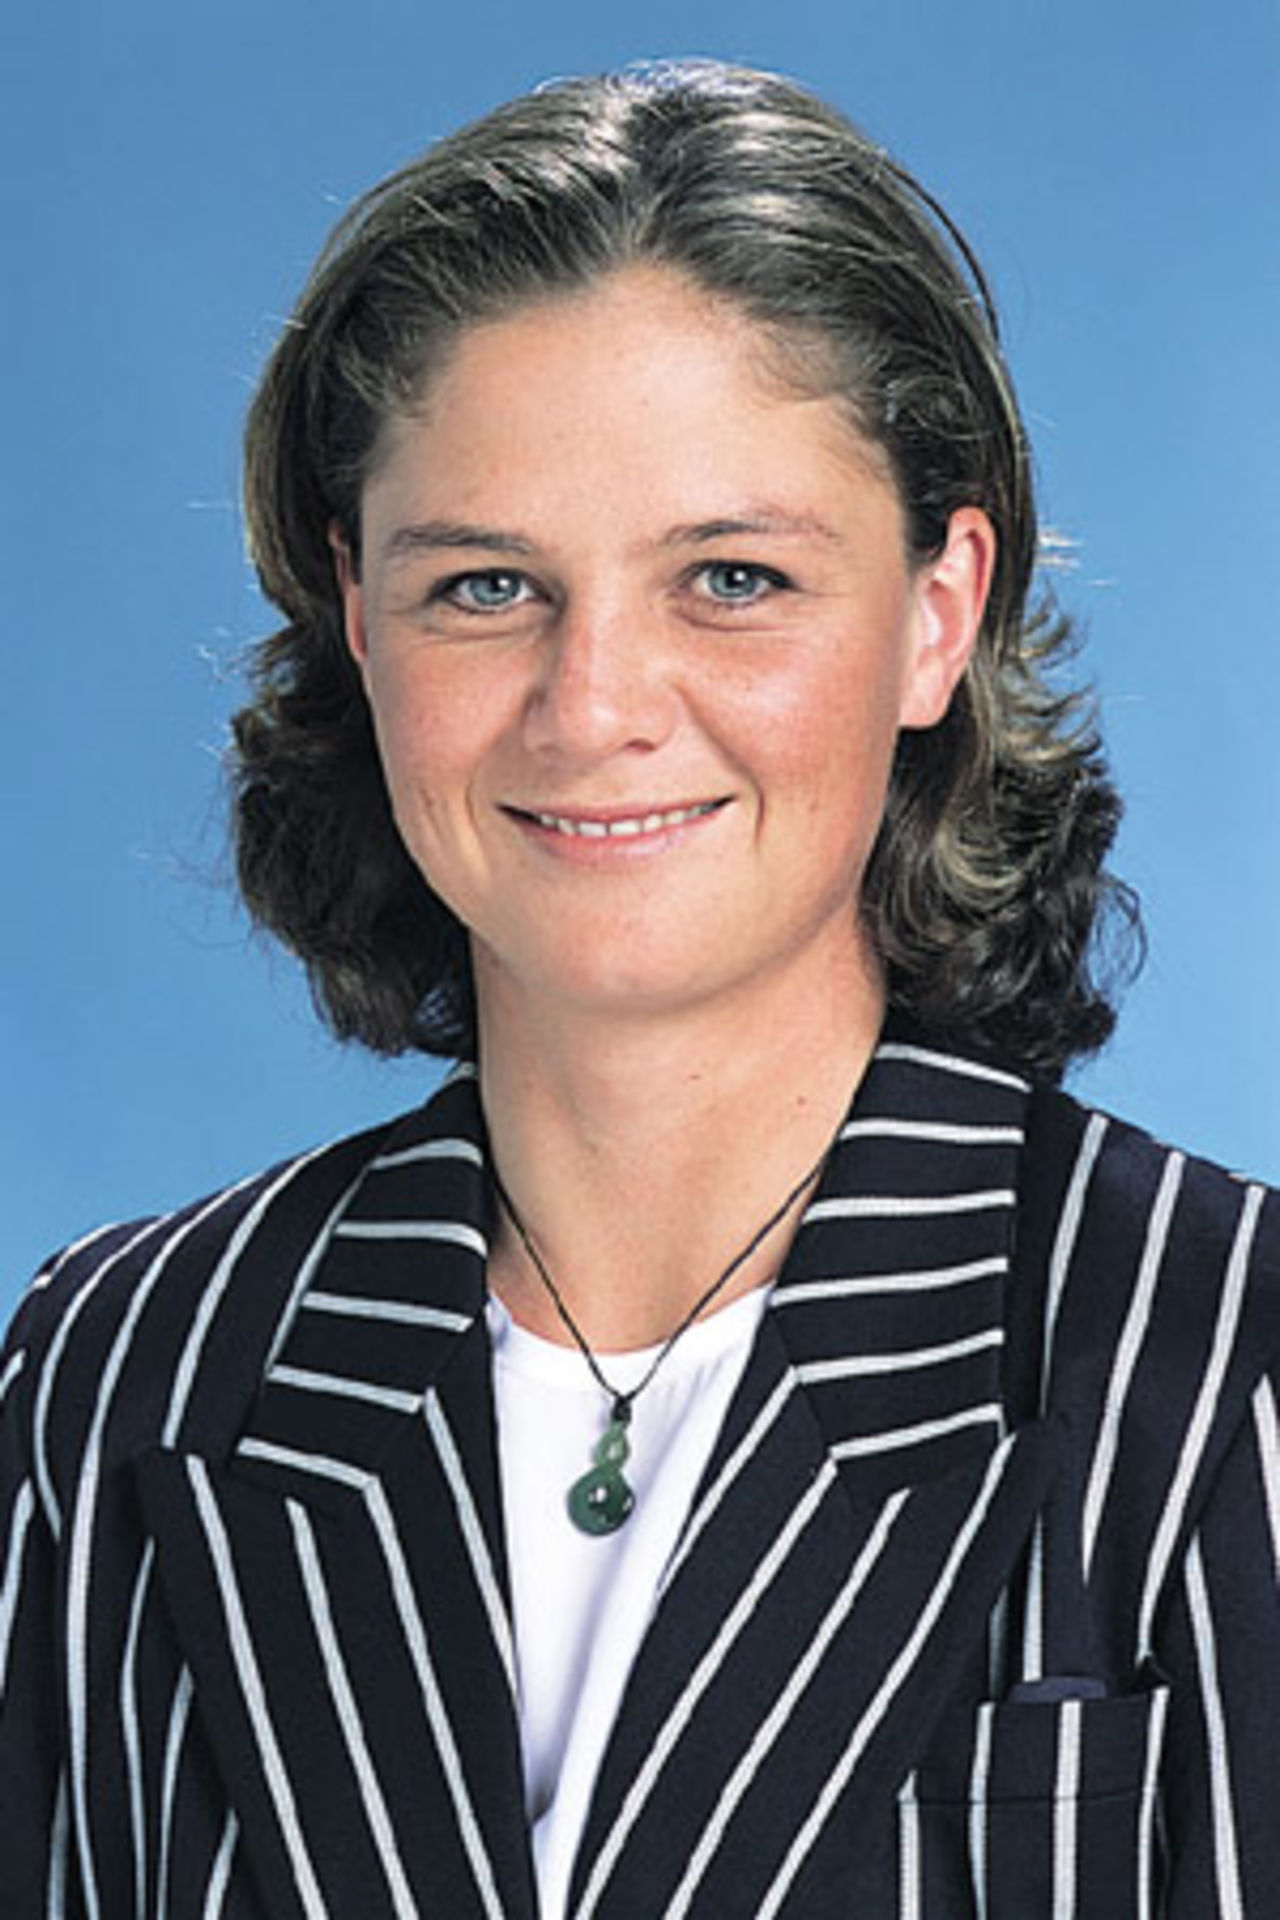 Portrait of Rebecca Rolls - New Zealand women's player in the 2001/02 season.